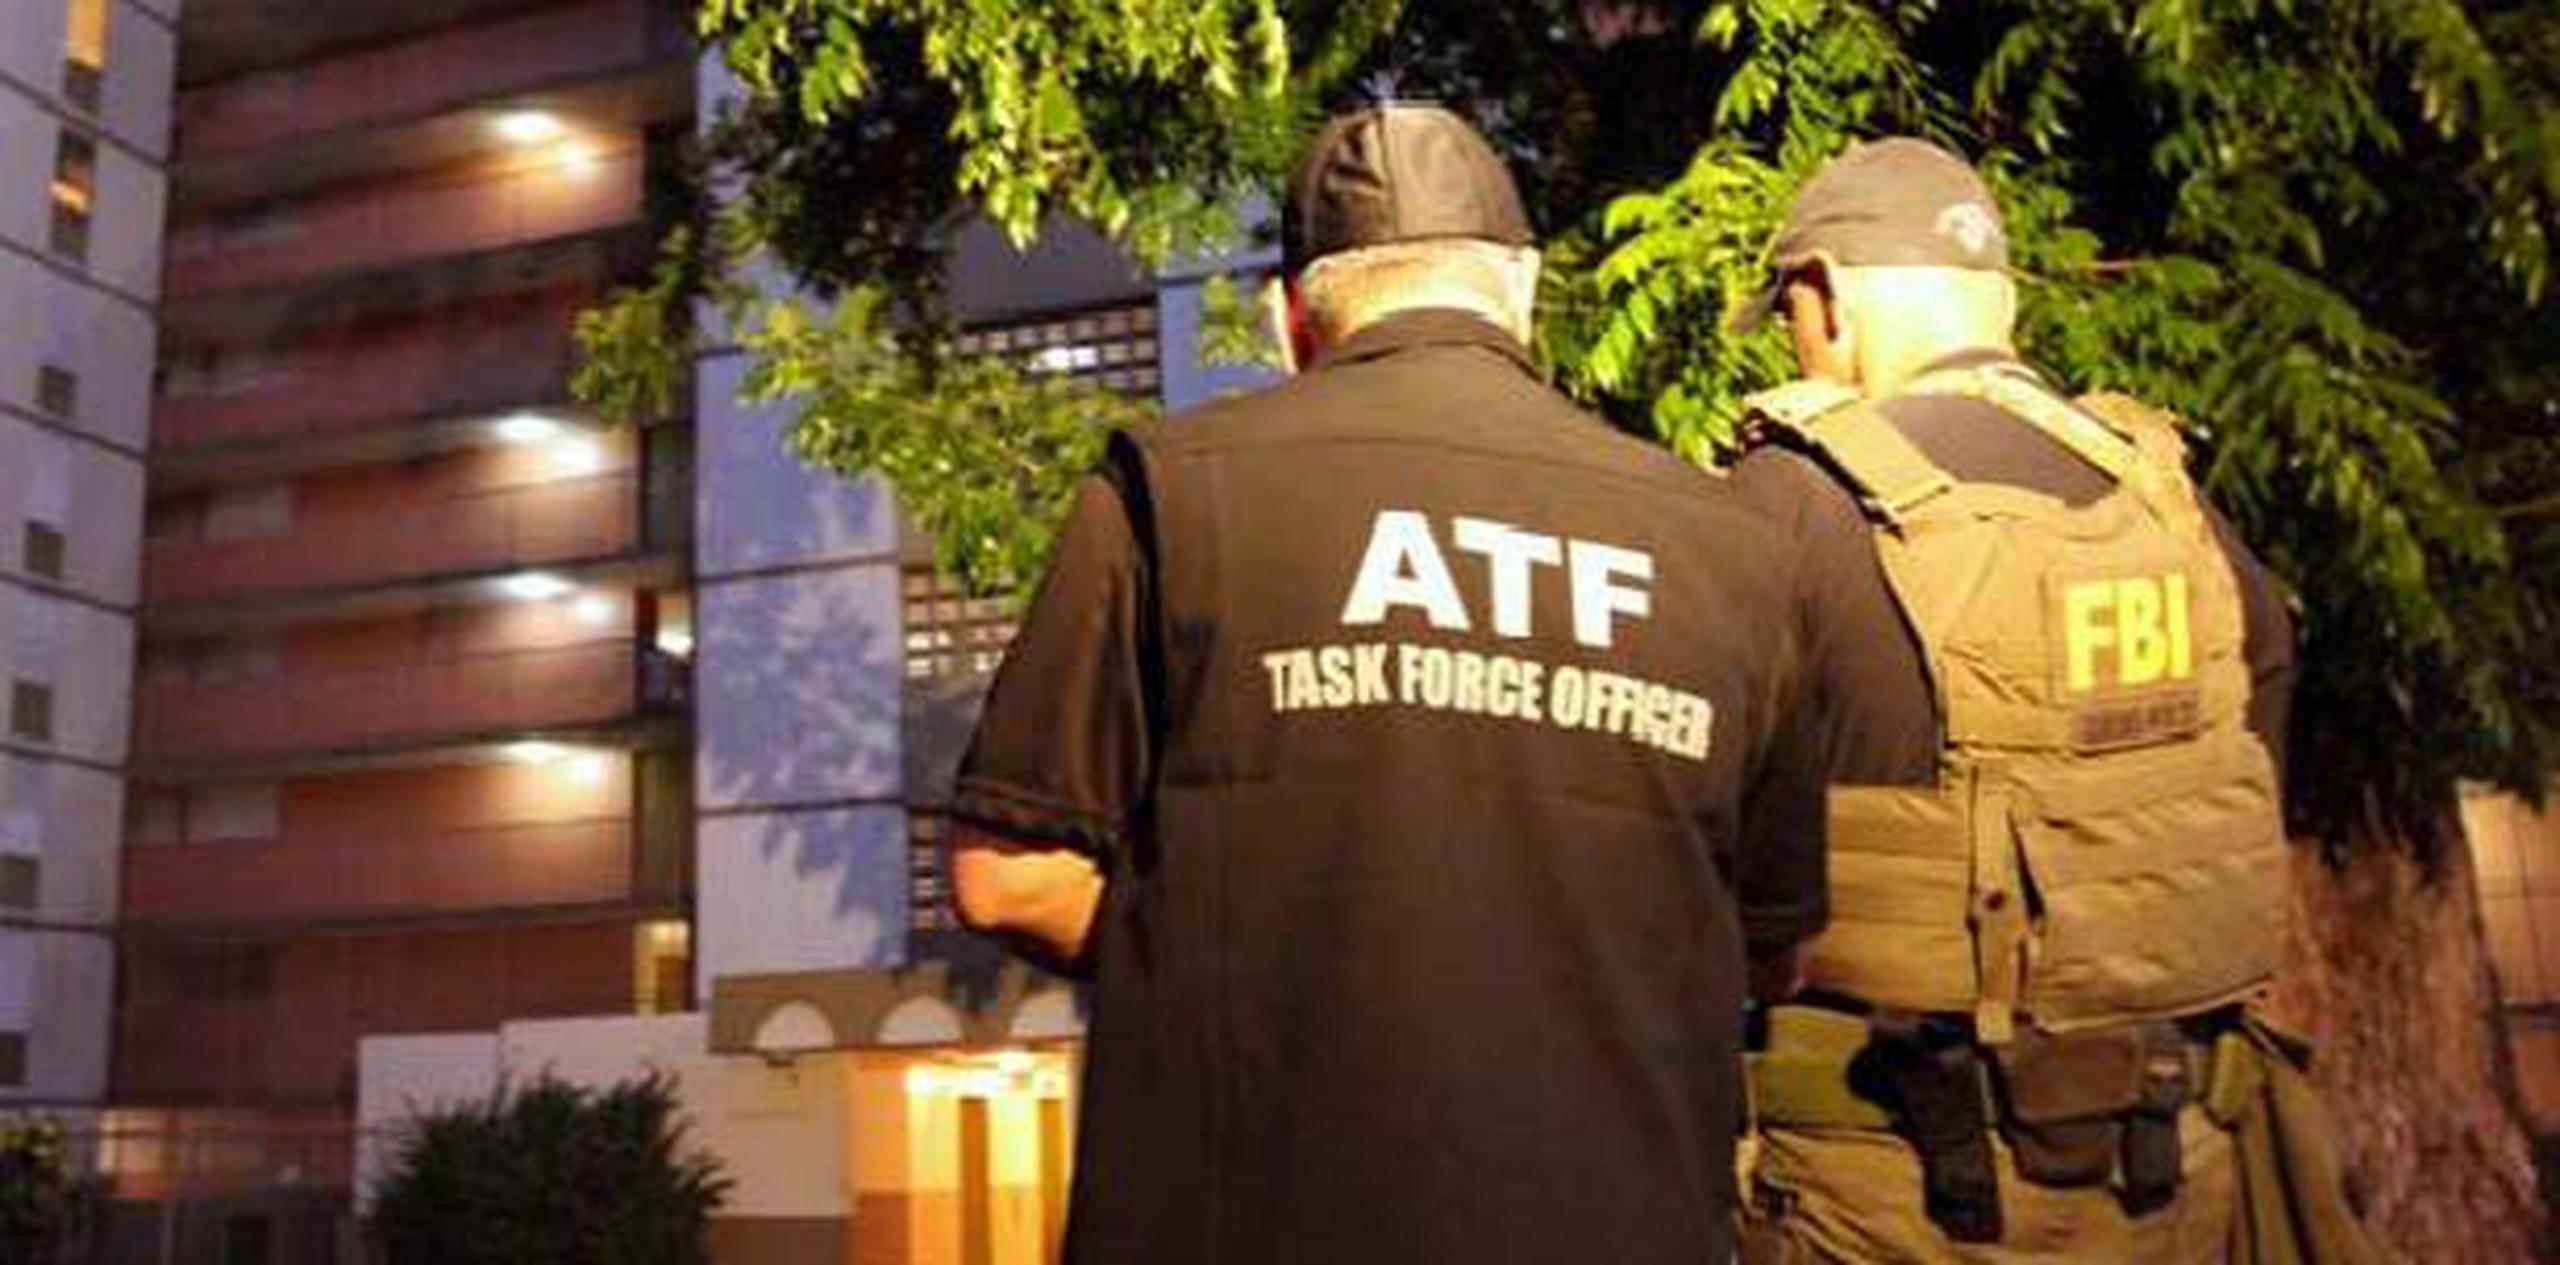 El portavoz del ATF, Carlos González, informó que estaban en búsqueda de un fugitivo de dicha organización y que dieron con su paradero. (Archivo)